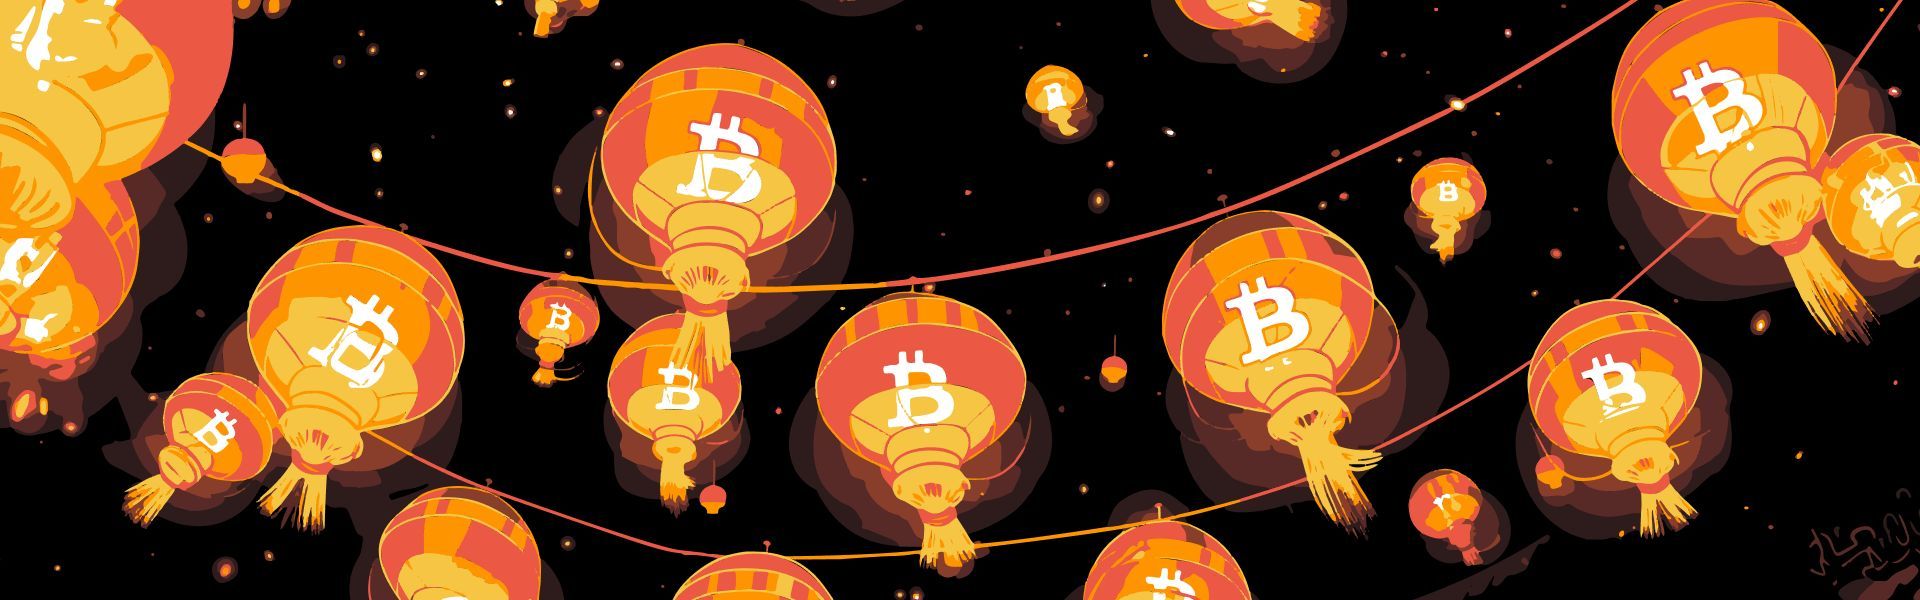 Spot-ETFs für Bitcoin sind in Hongkong zugelassen